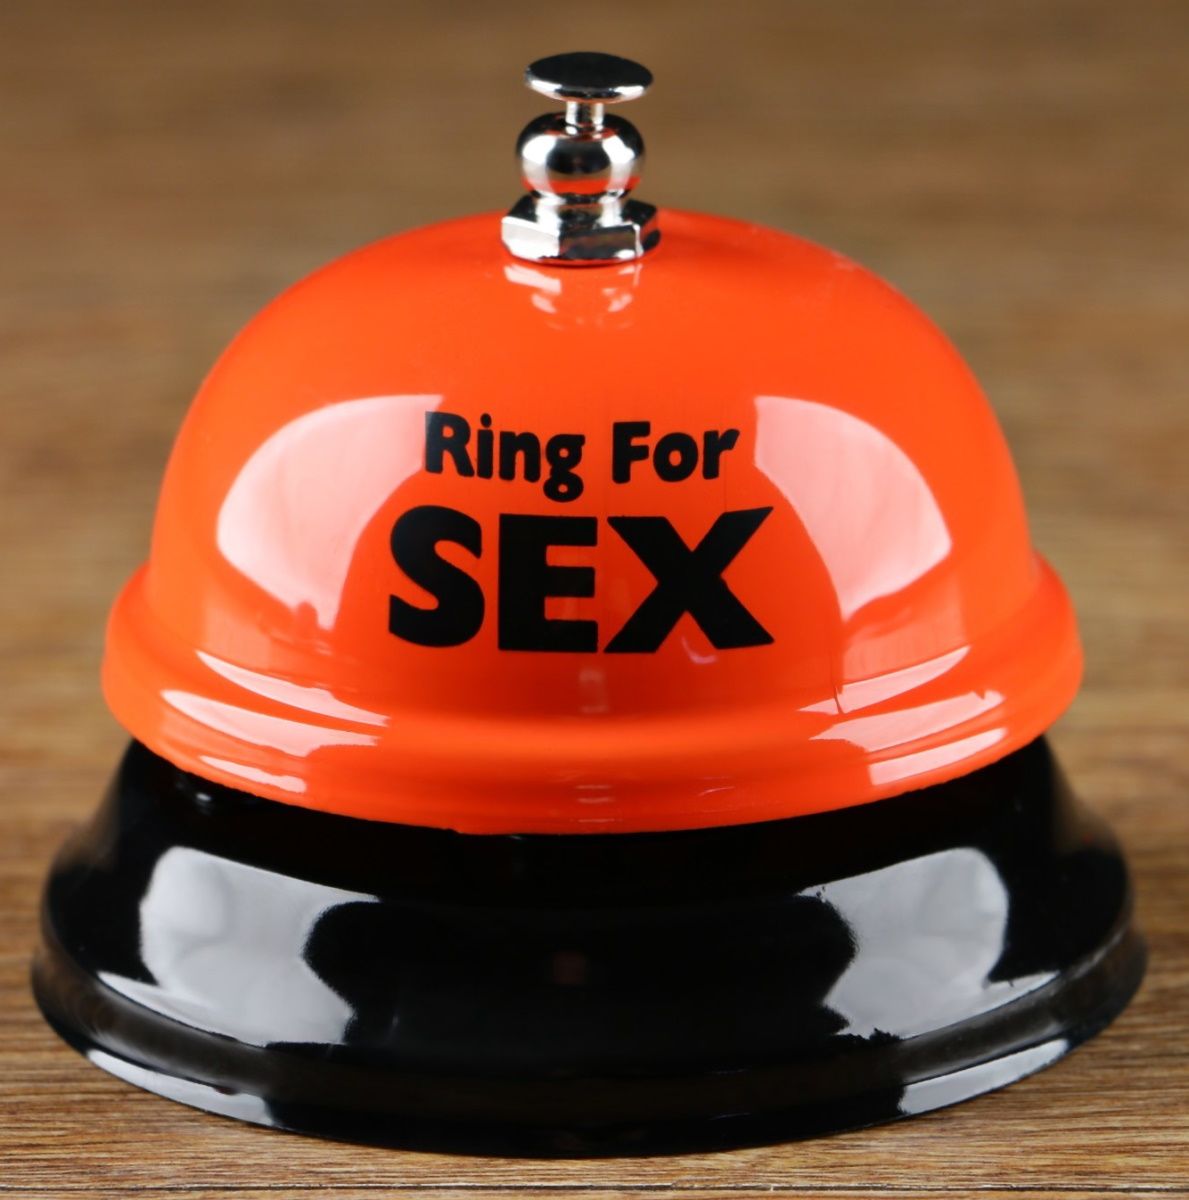 Настольный звонок RING FOR SEX. Цвета в ассортименте, но не могут быть выбраны!